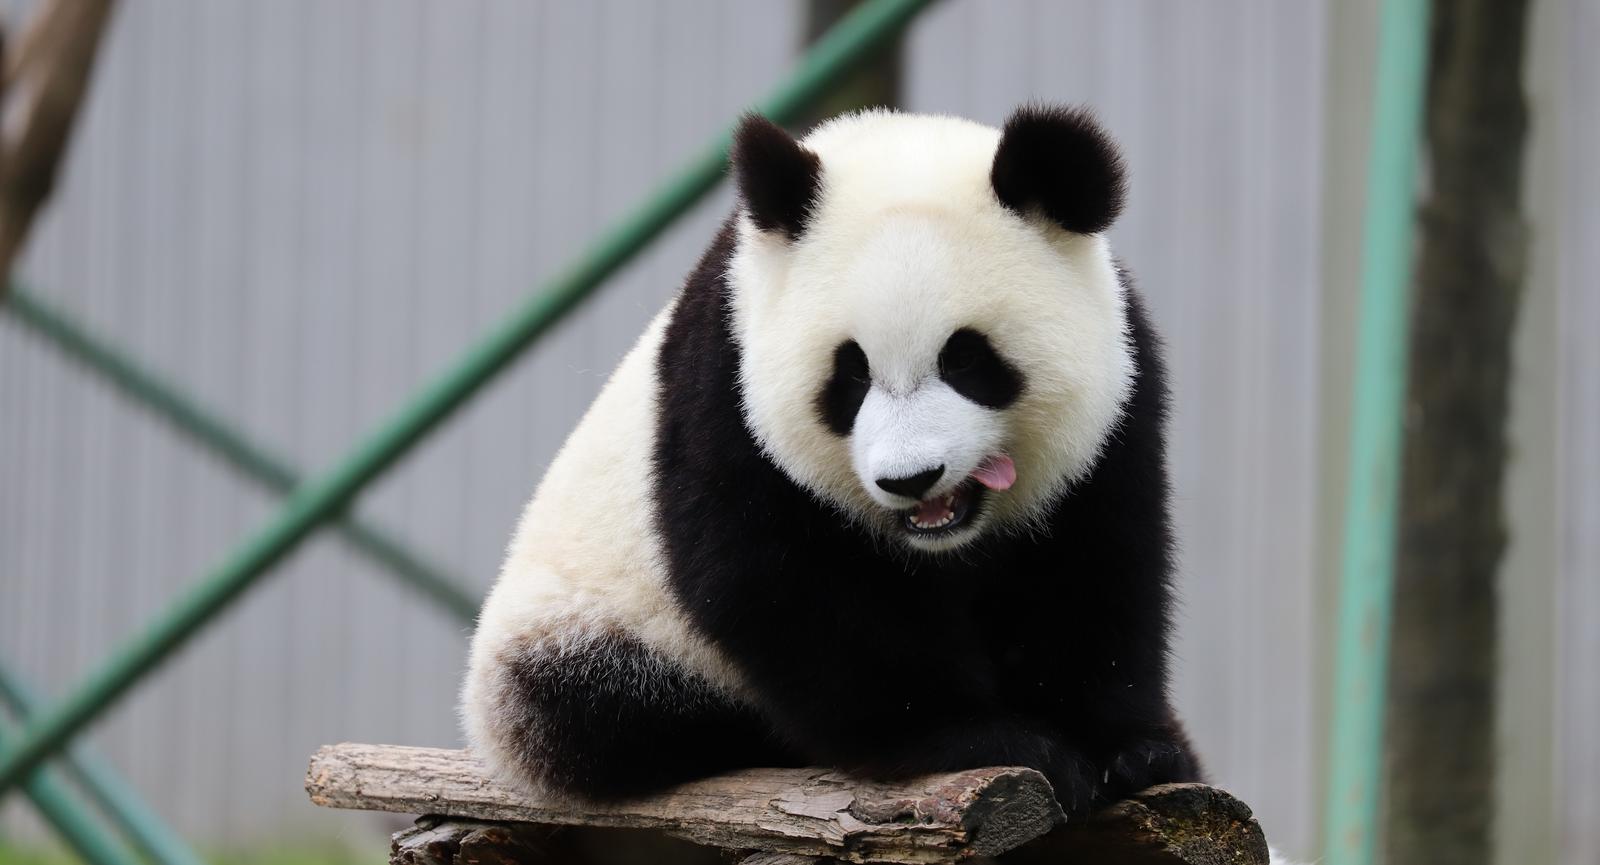 重庆四只大熊猫围坐吃“九宫格火锅” 筷子和锅都被吃掉了